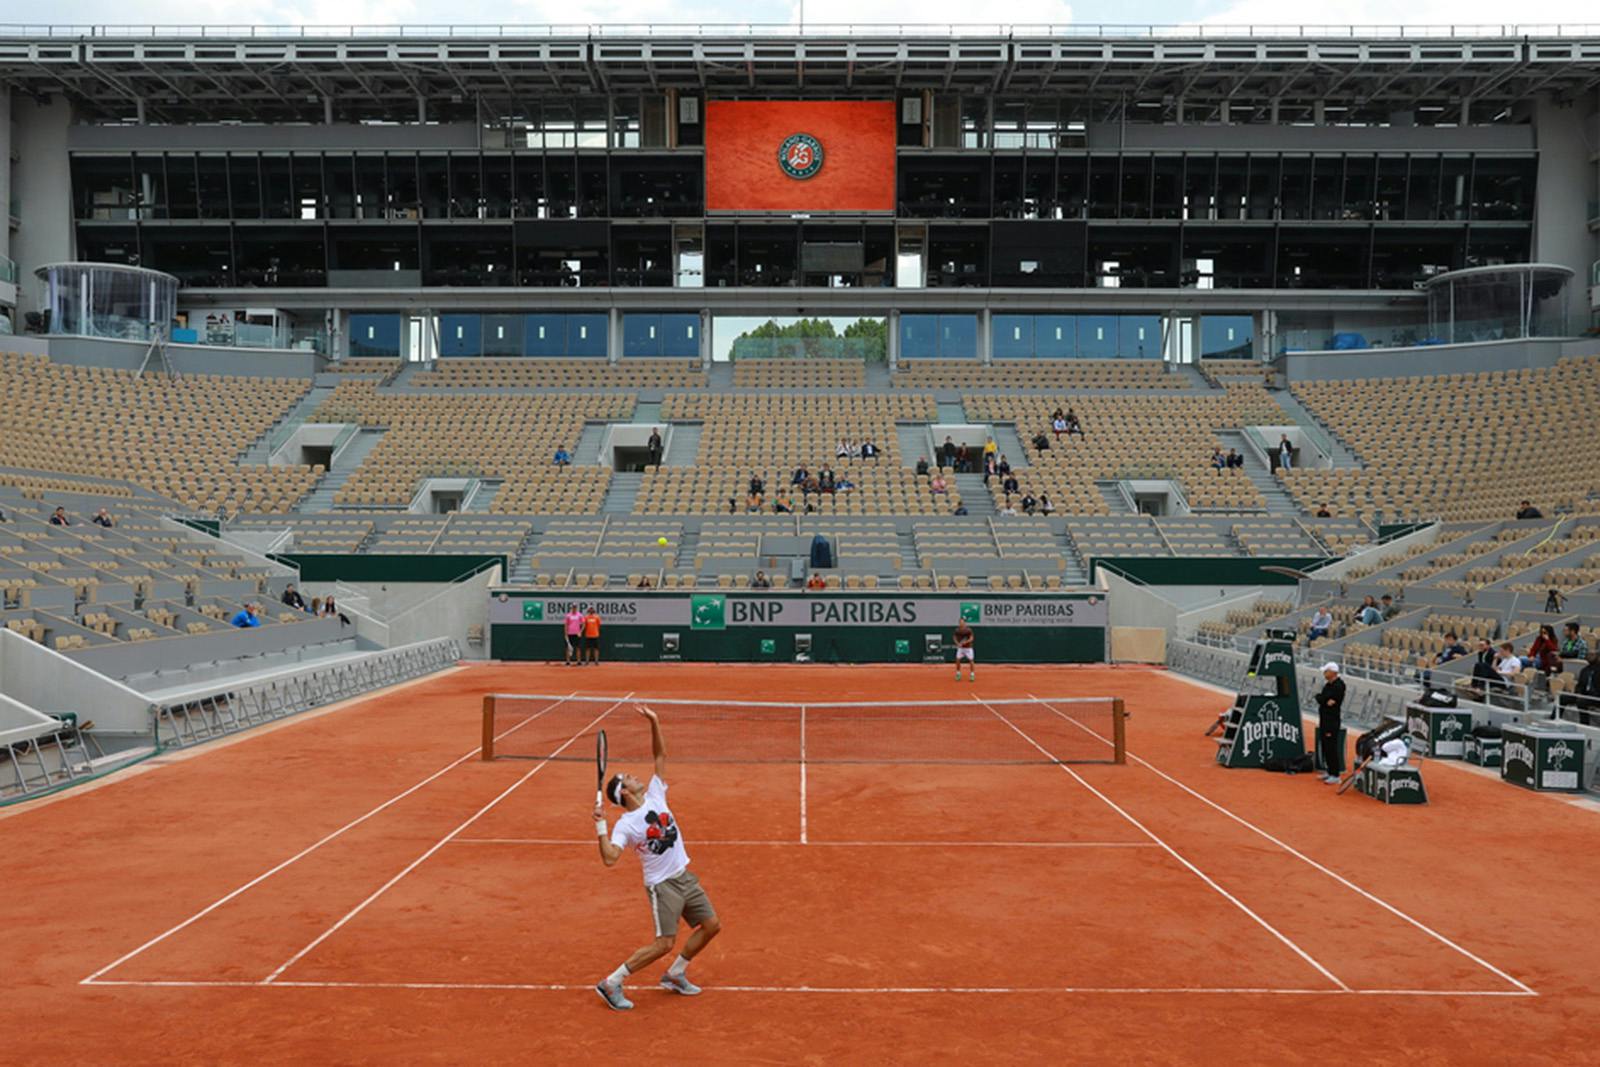 Roger Federer practice